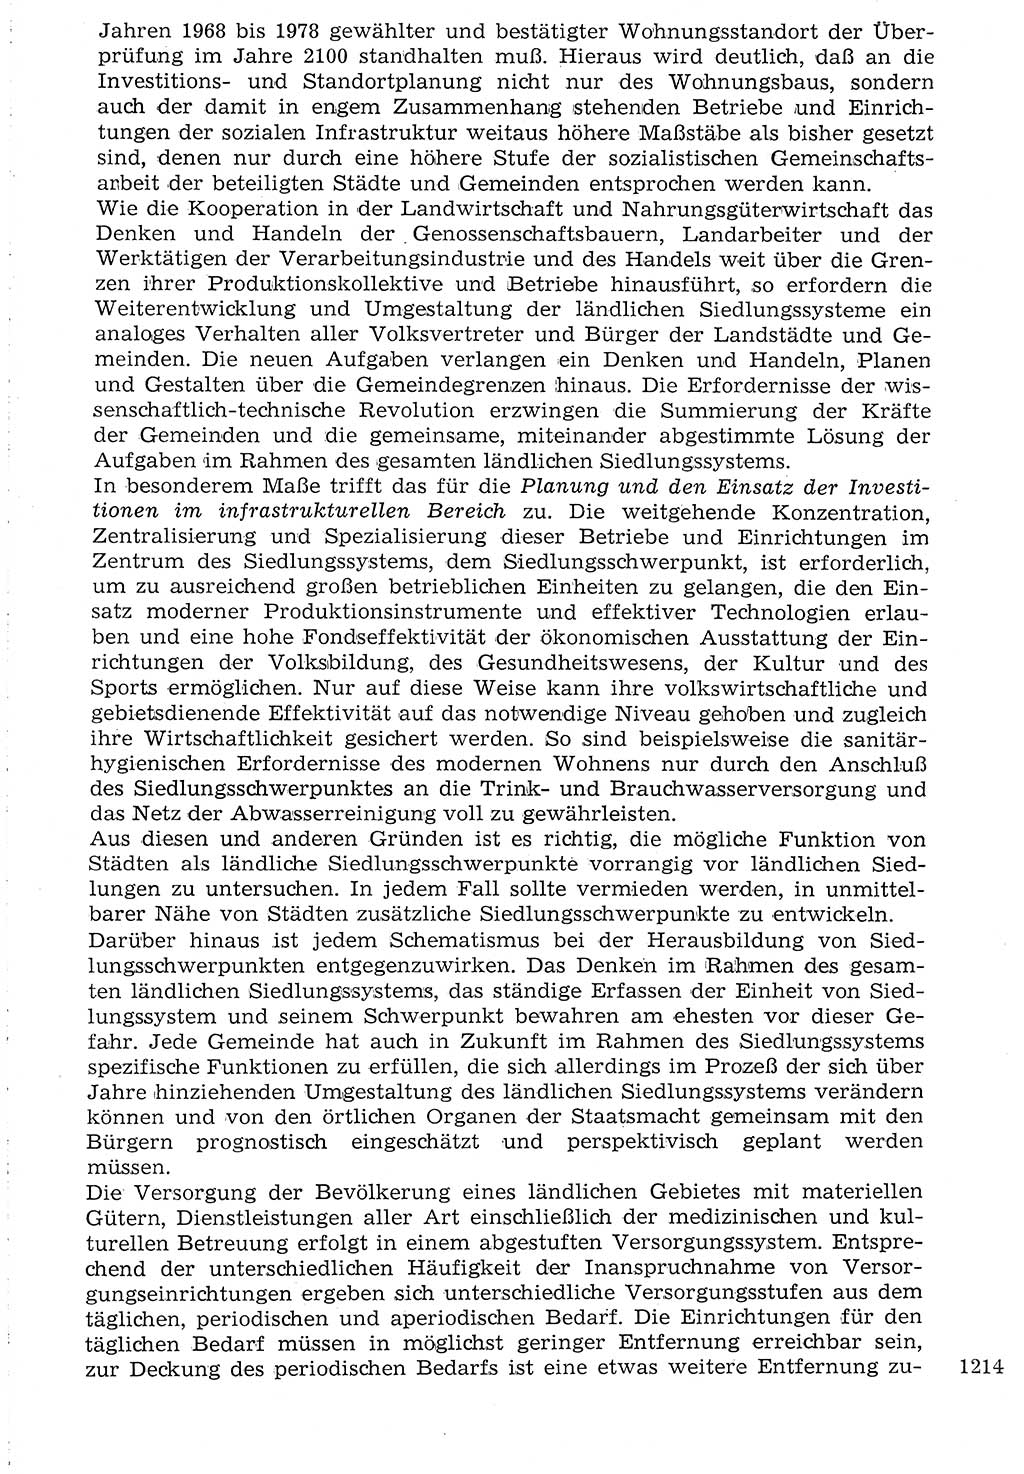 Staat und Recht (StuR), 17. Jahrgang [Deutsche Demokratische Republik (DDR)] 1968, Seite 1214 (StuR DDR 1968, S. 1214)